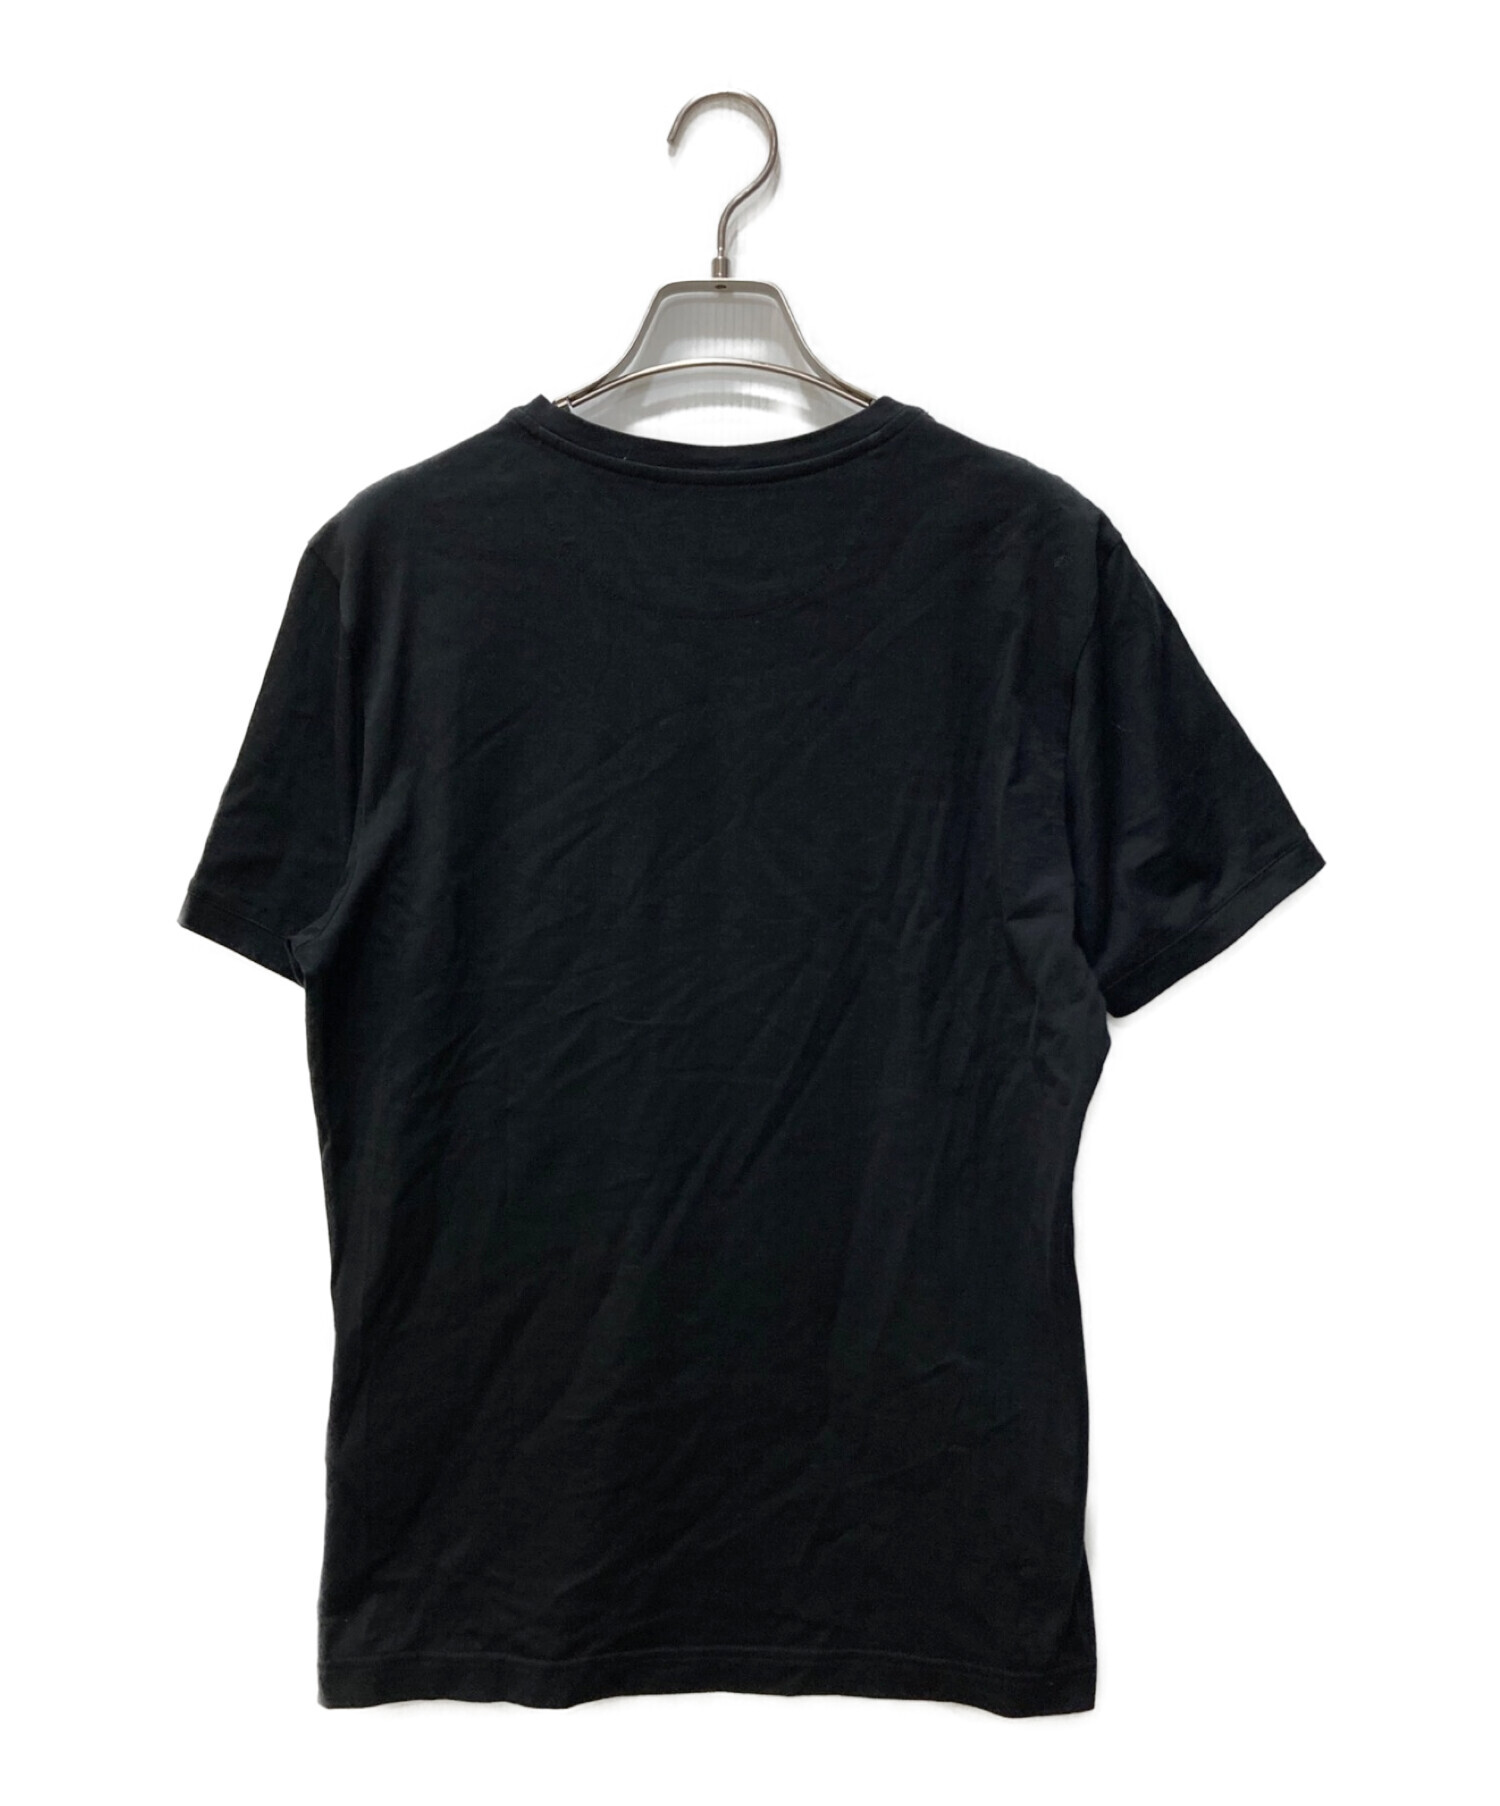 FENDI (フェンディ) モンスターバグスレザーパッチTシャツ ブラック サイズ:46